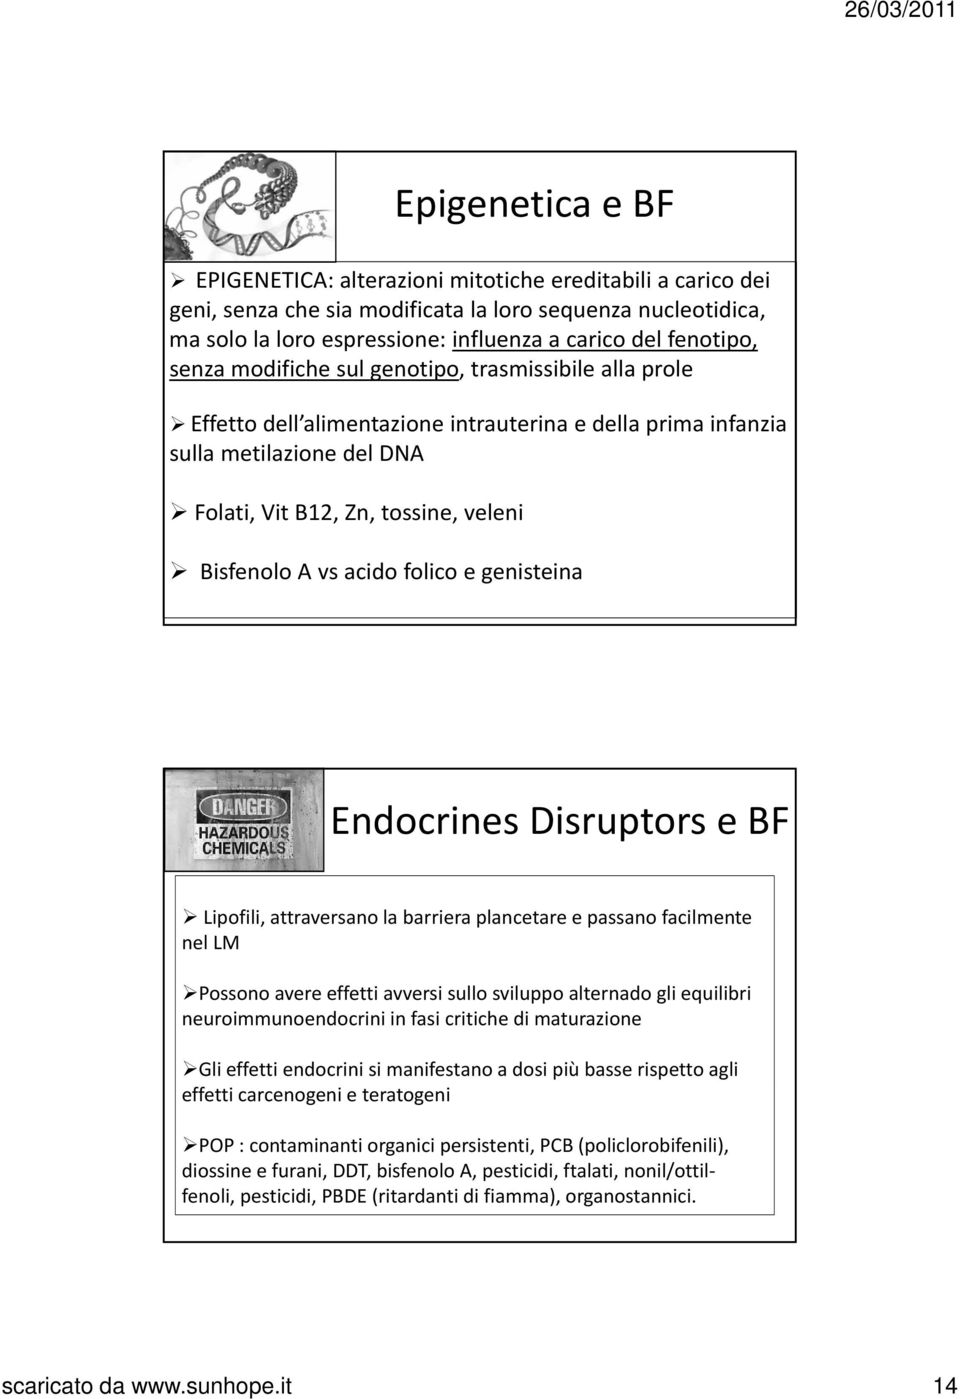 Bisfenolo A vs acido folico e genisteina Endocrines Disruptors e BF Lipofili, attraversano la barriera plancetare e passano facilmente nel LM Possono avere effetti avversi sullo sviluppo alternado